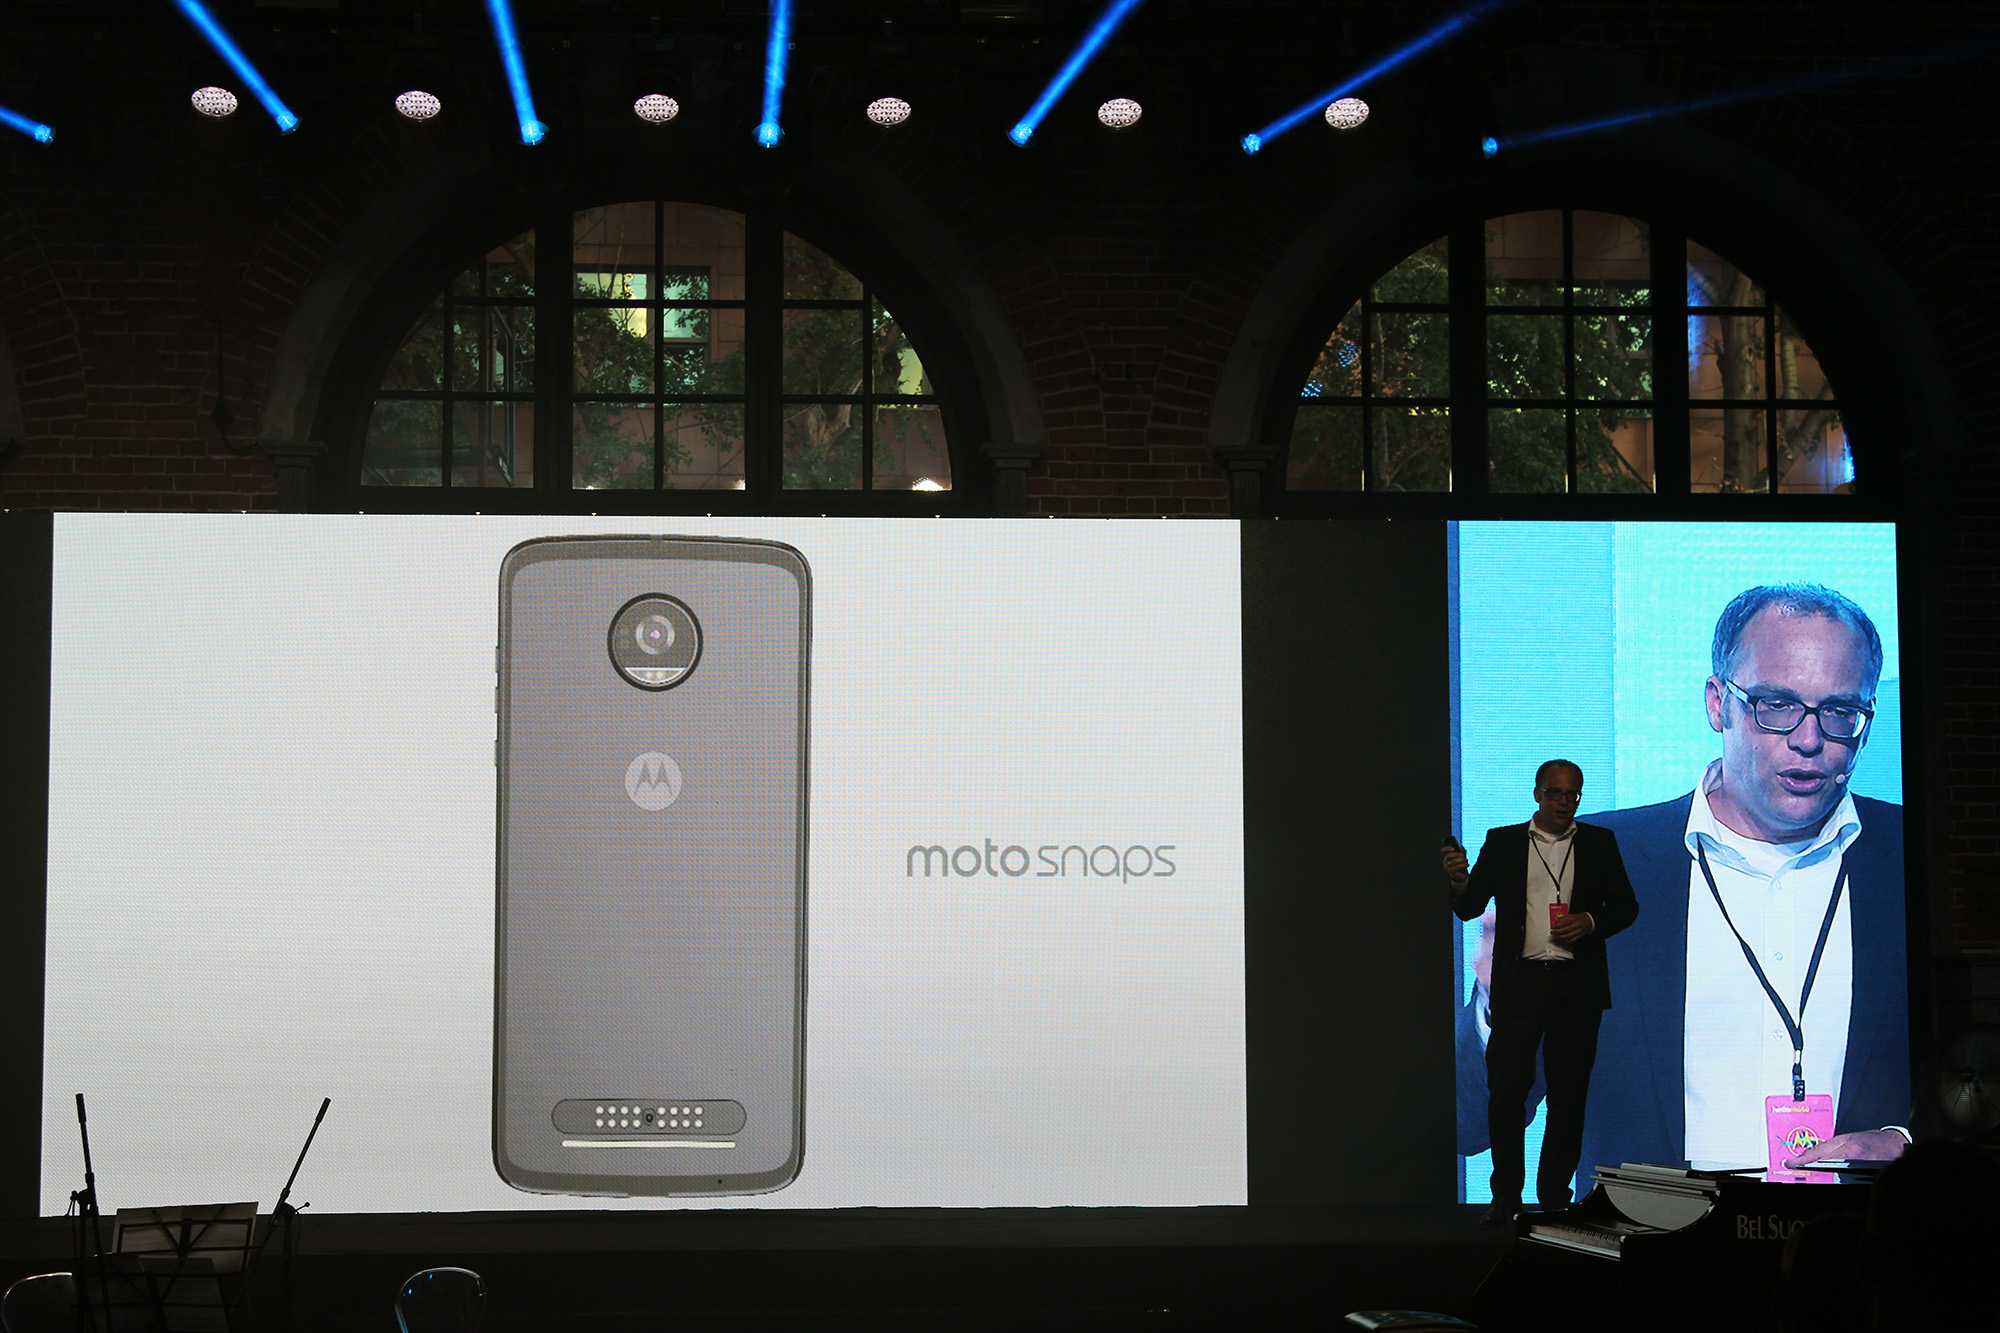 На территории Европы состоялась презентация нового смартфона от Motorola стоимость которого должна составить 300 евро На выбор покупателя предлагаются синий и белый